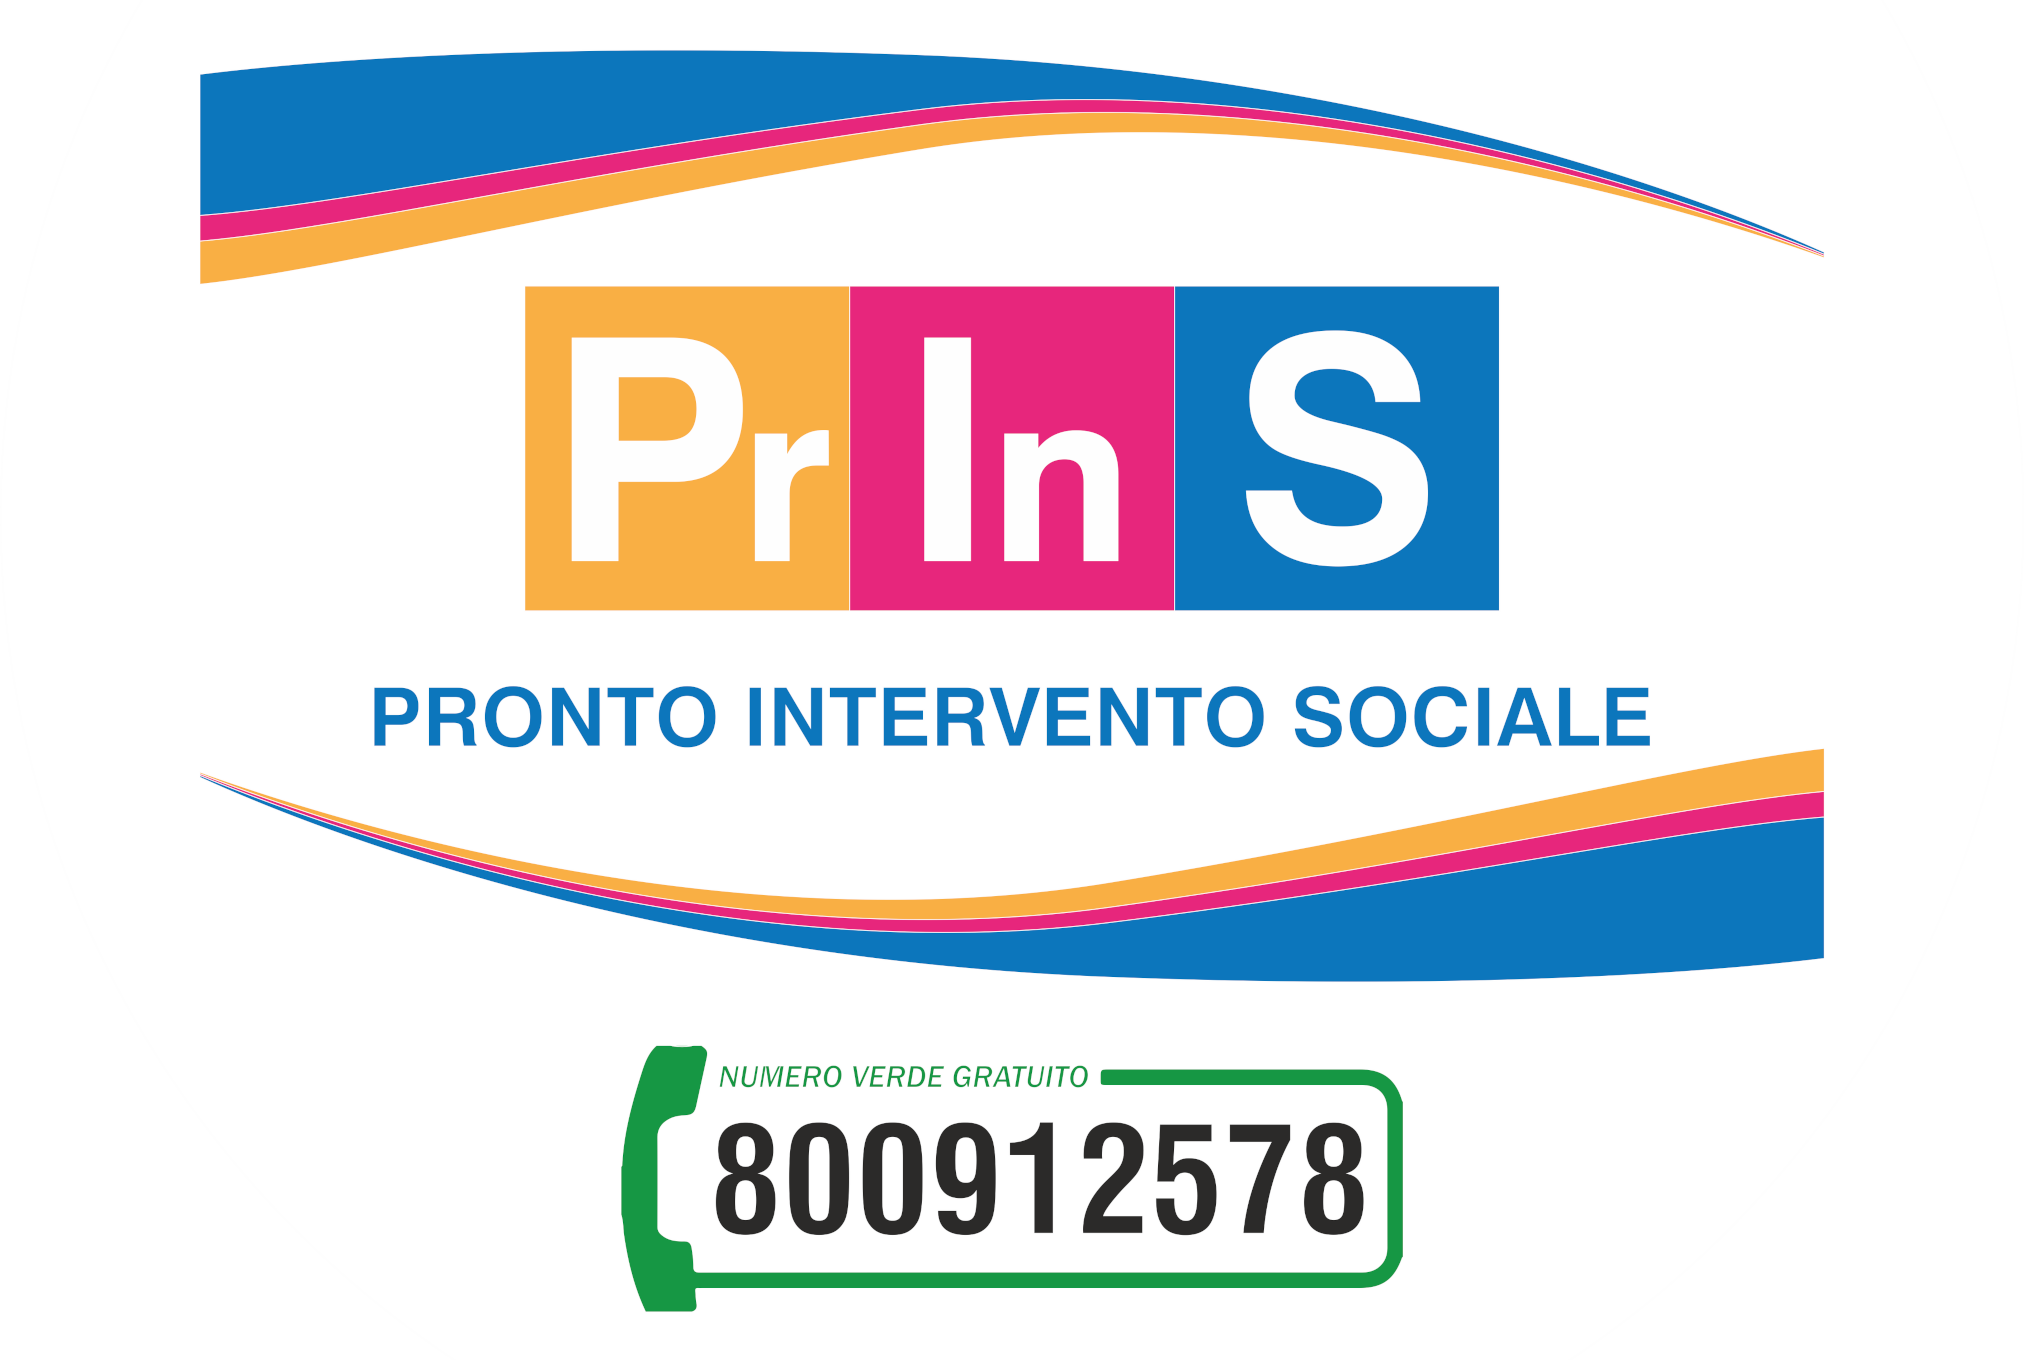 PRINS logo